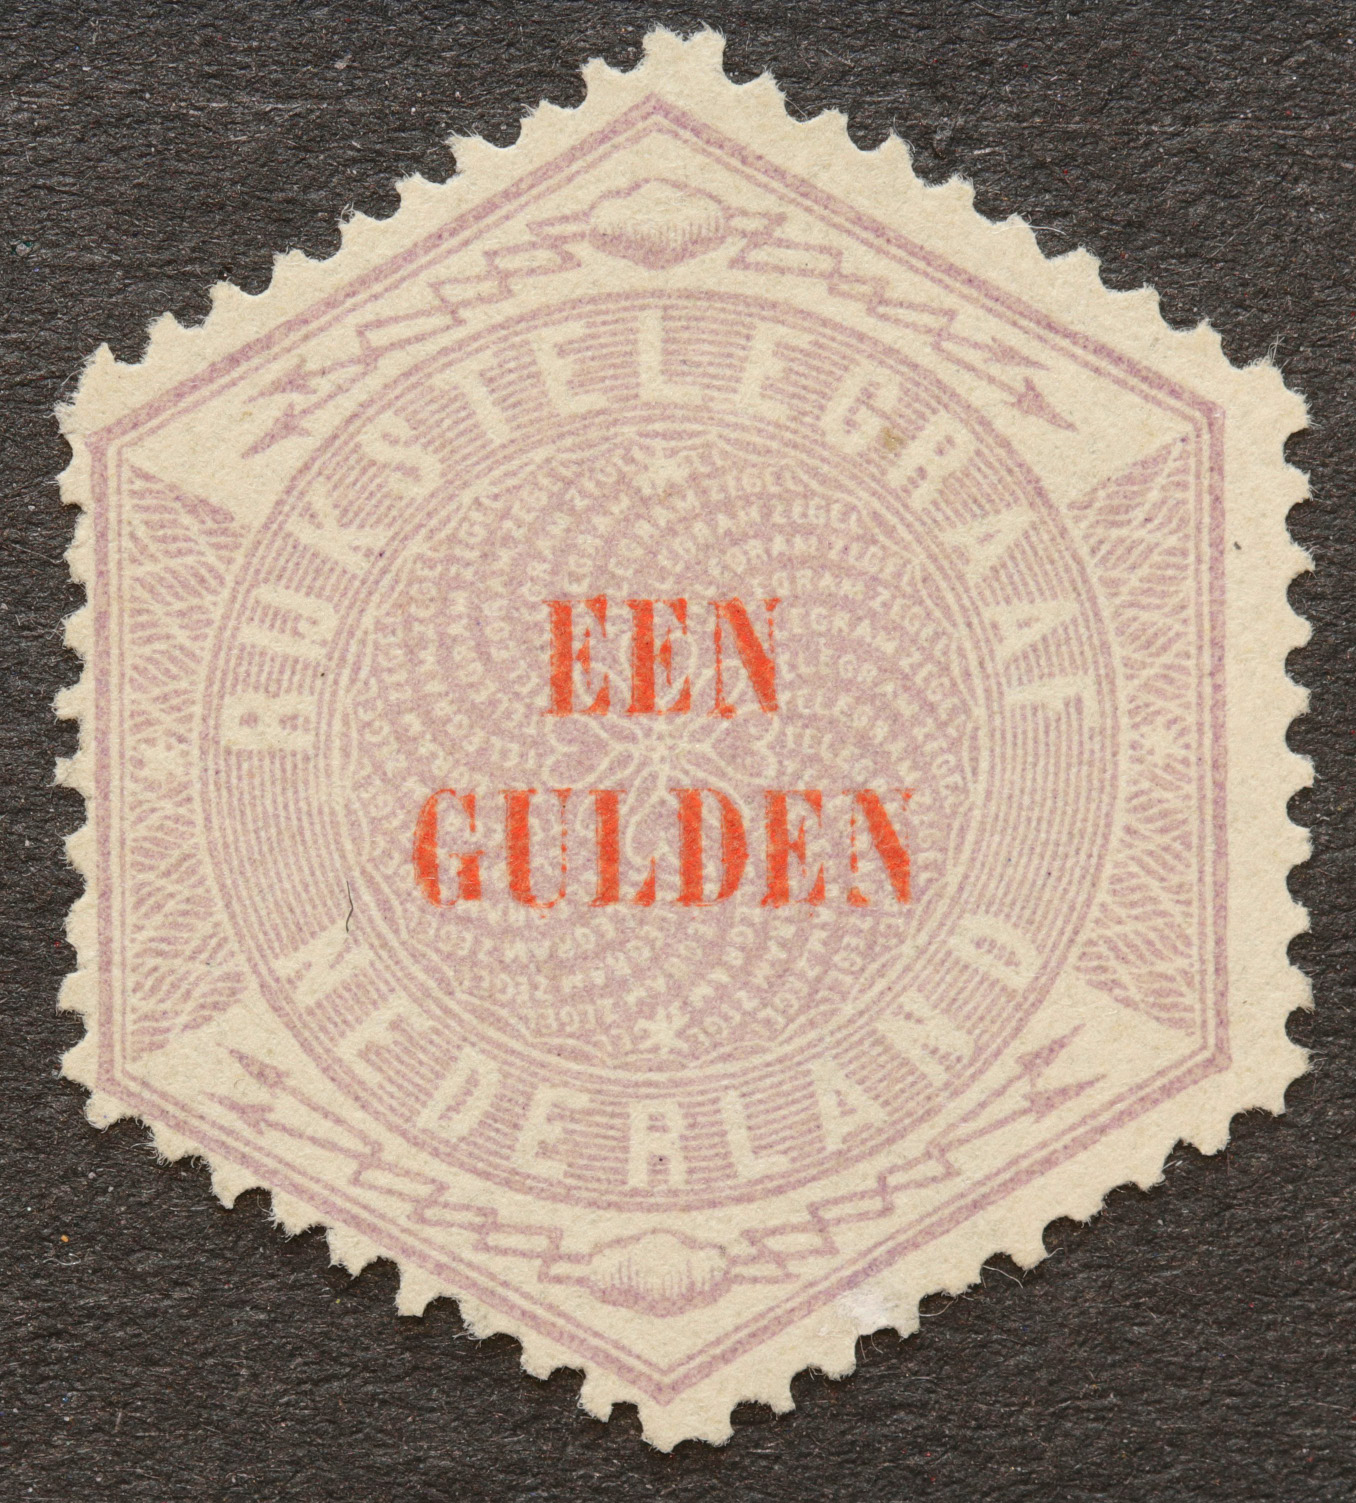 Nederland NVPH nr.TG 11 Telegramzegels 1903 ongebruikt